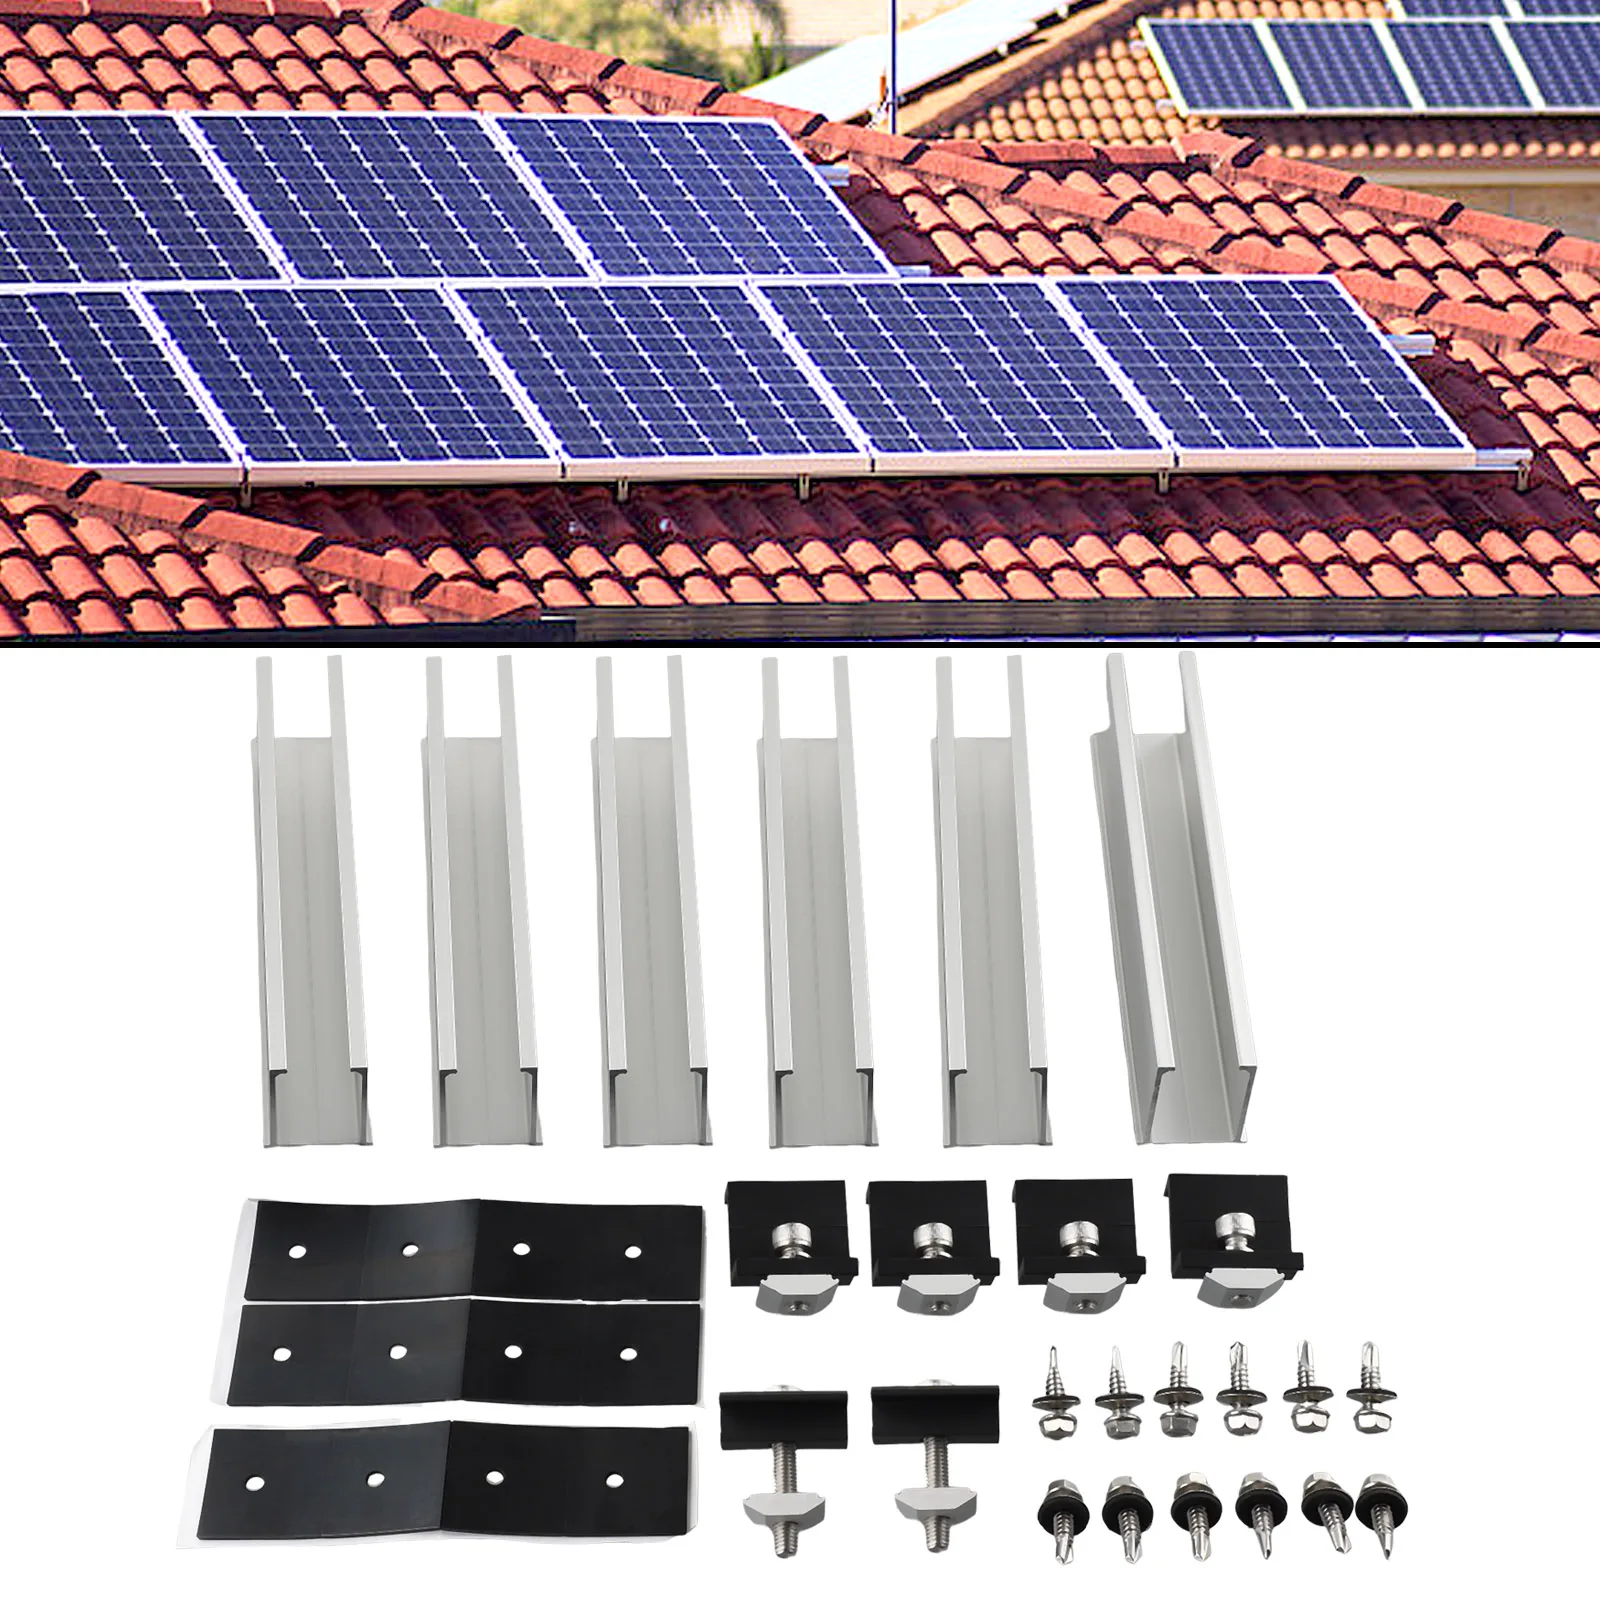 Походные внутренние и наружные направляющие для концевого зажима панели солнечных батарей Средний зажим 4/6/8 шт. Замена алюминия черного + серебристого цвета